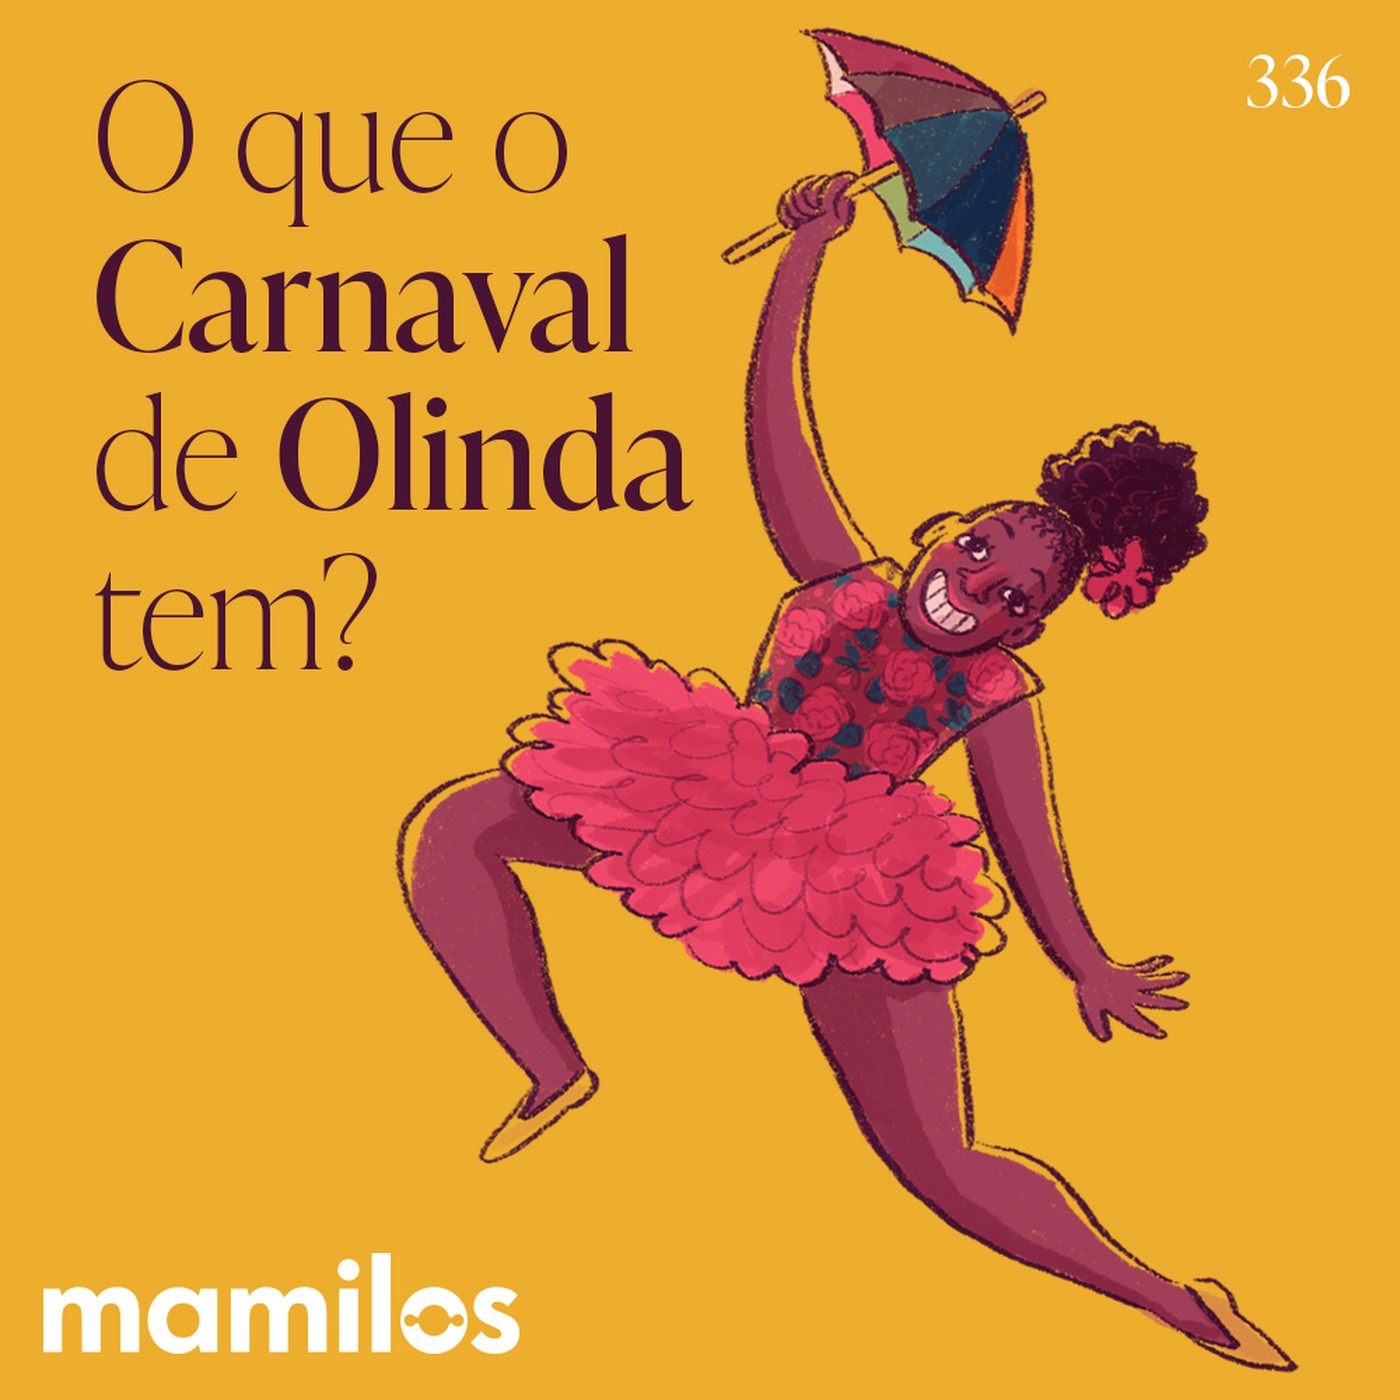 O que o Carnaval de Olinda tem?